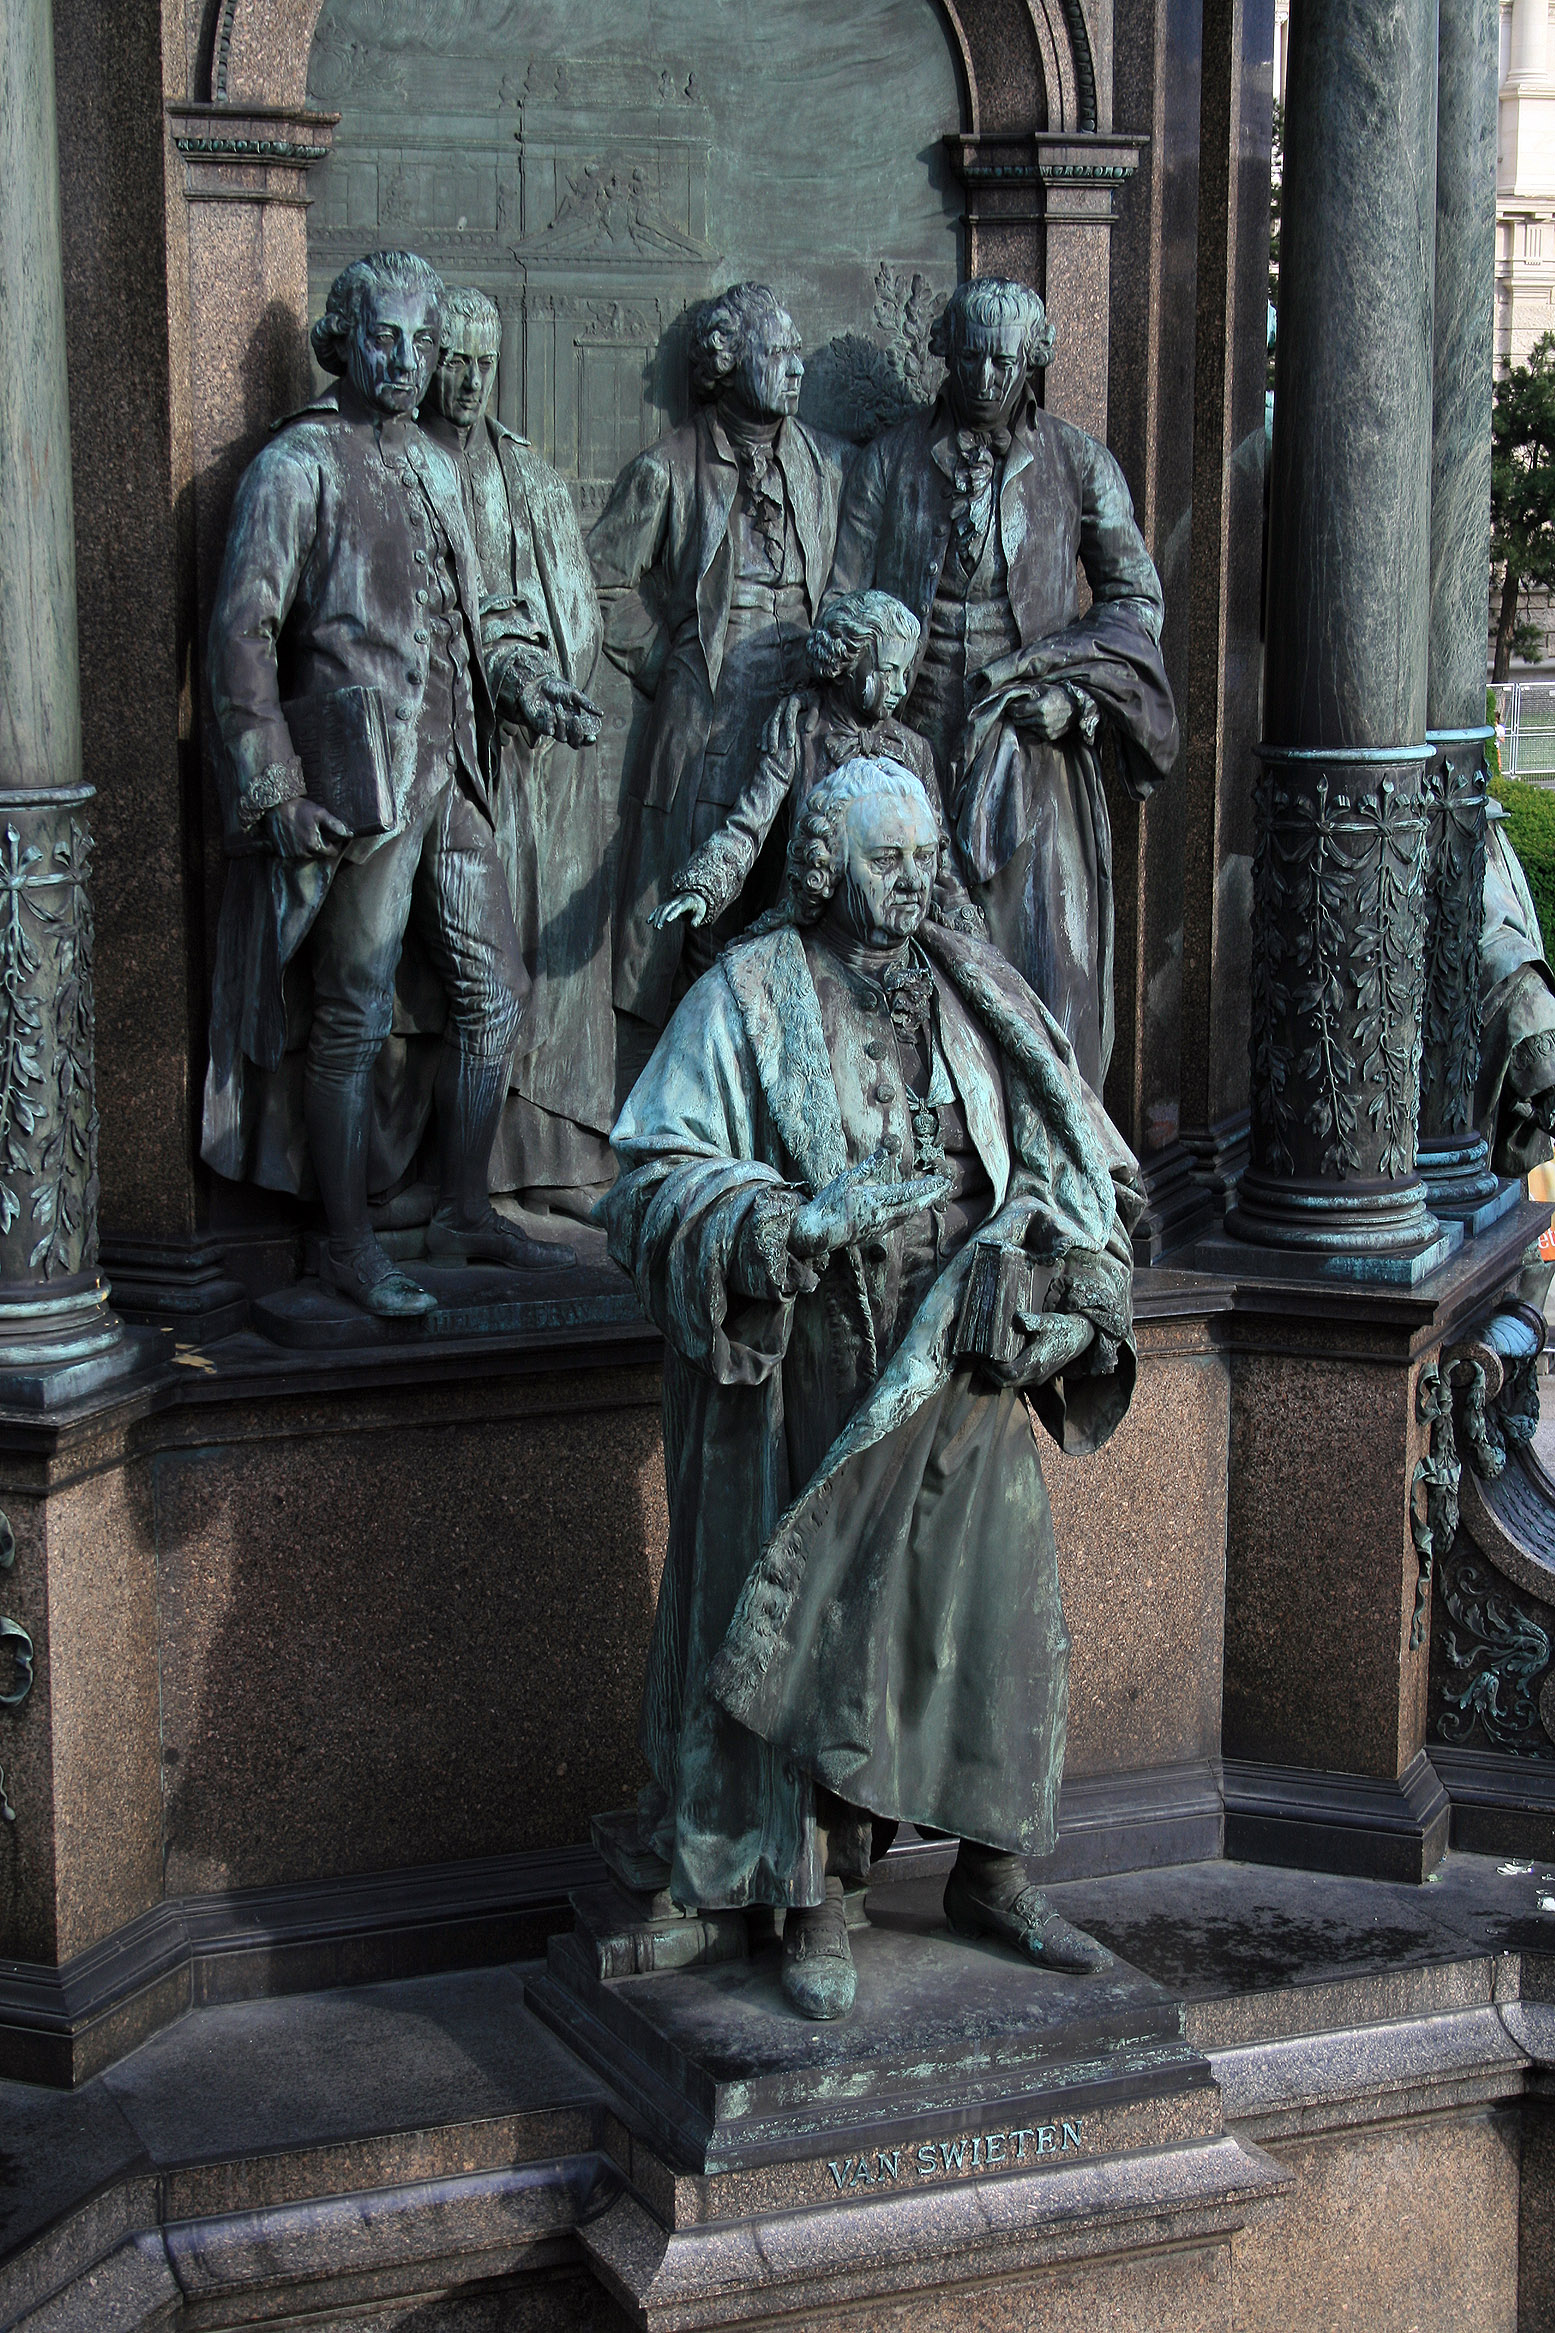 Maria-Theresien-Denkmal Wien - van Swieten, Eckhel, Pray Gluck, Haydn, Mozart 2008